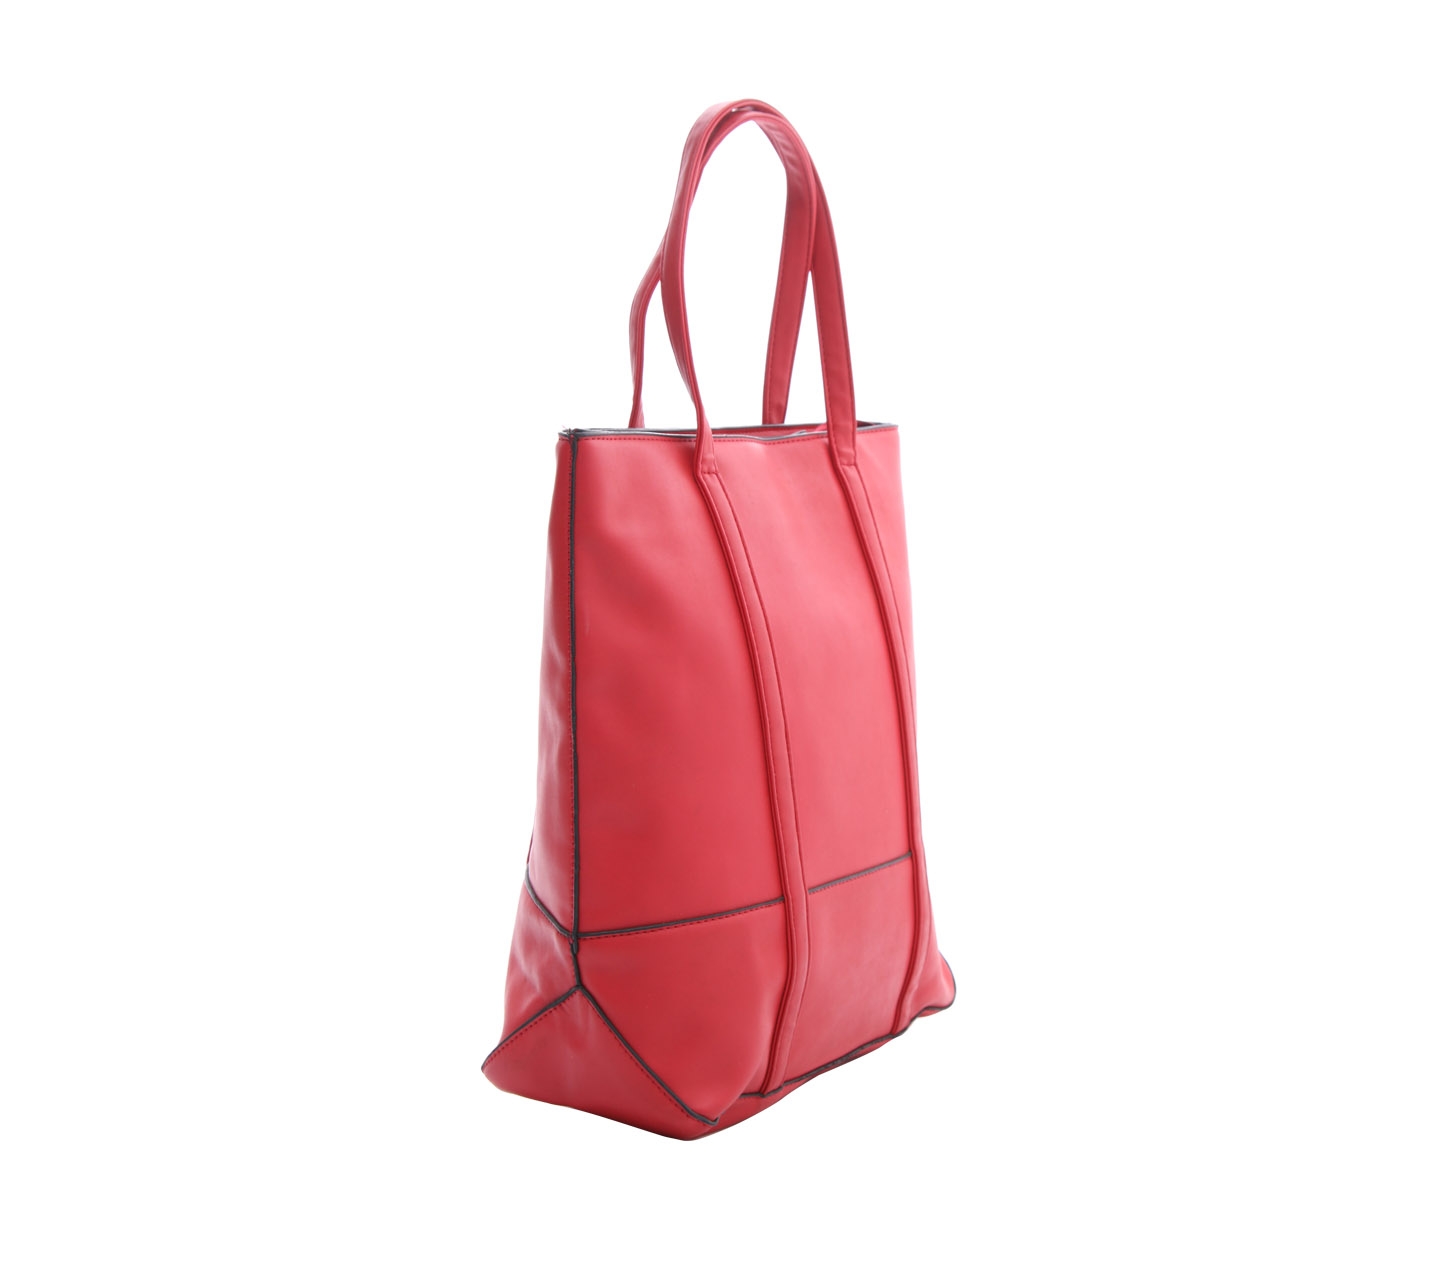 Les Femmes Red Tote Bag